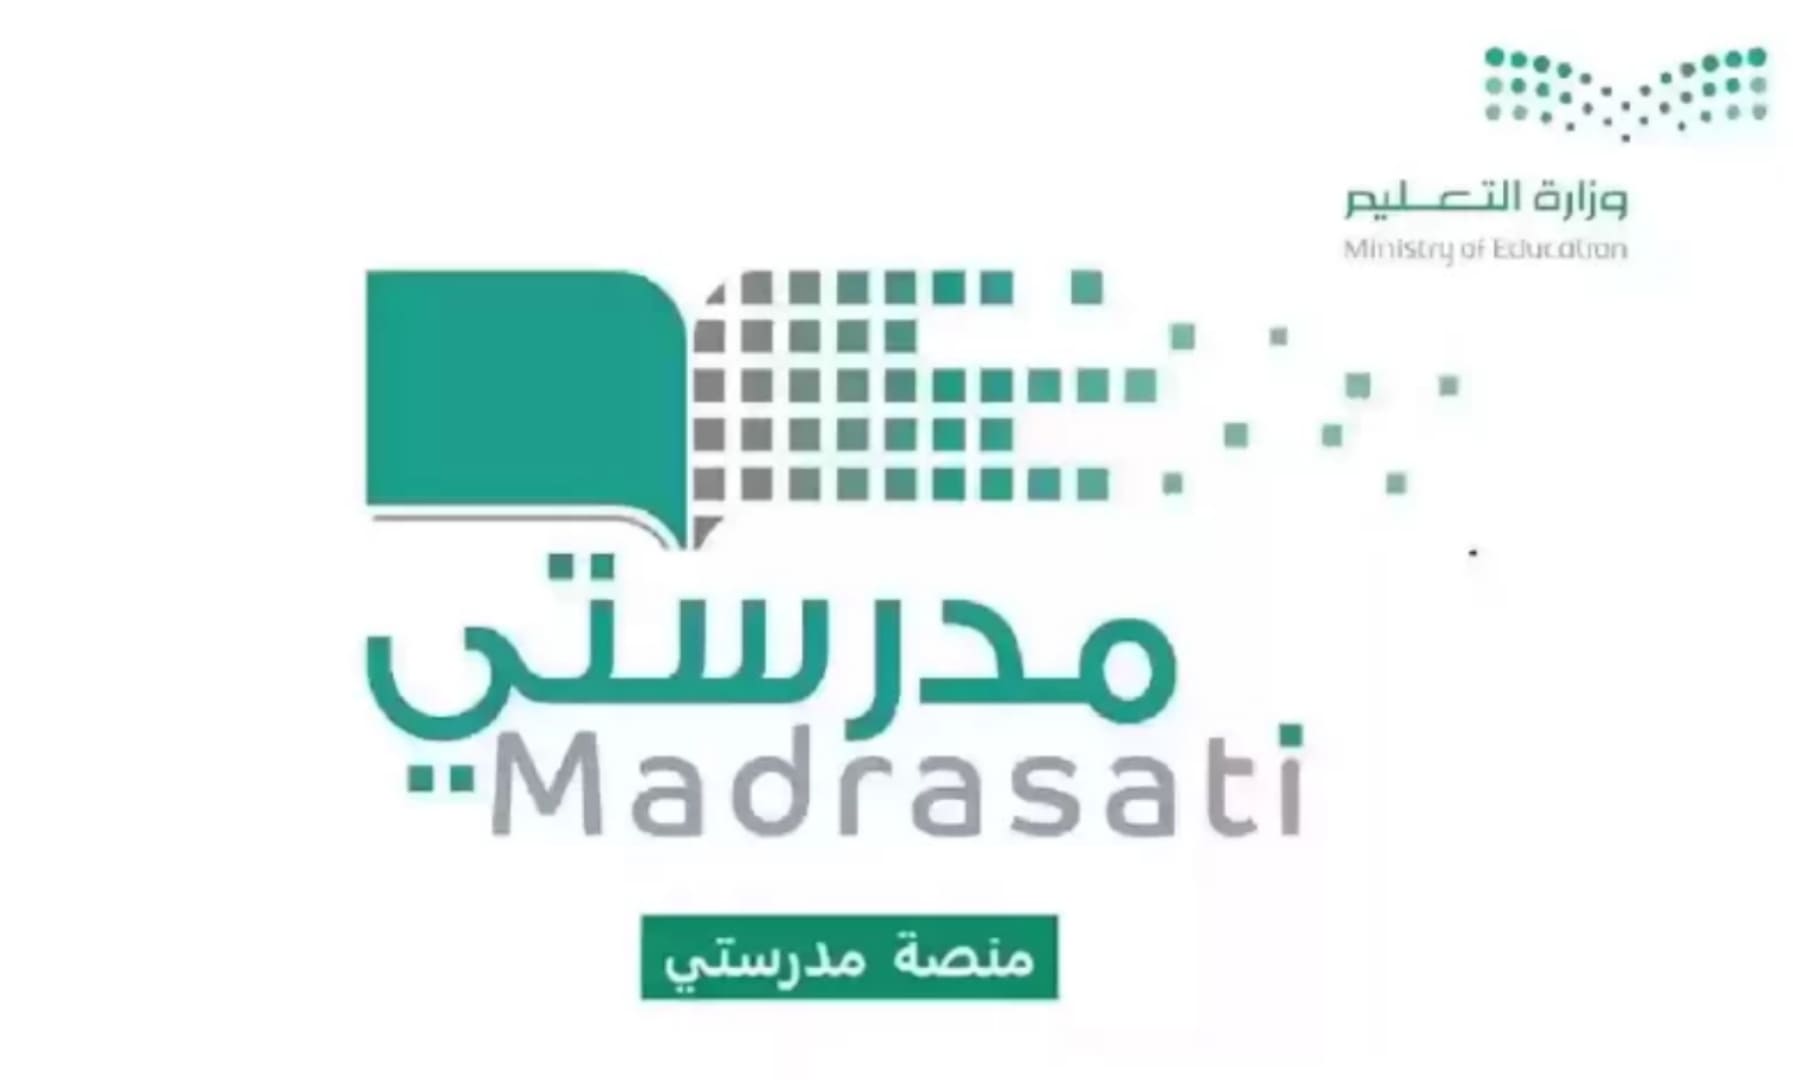 خطوات تسجيل الدخول إلى منصة مدرستي بالمملكة العربية السعودية وكيفية تحديث البيانات